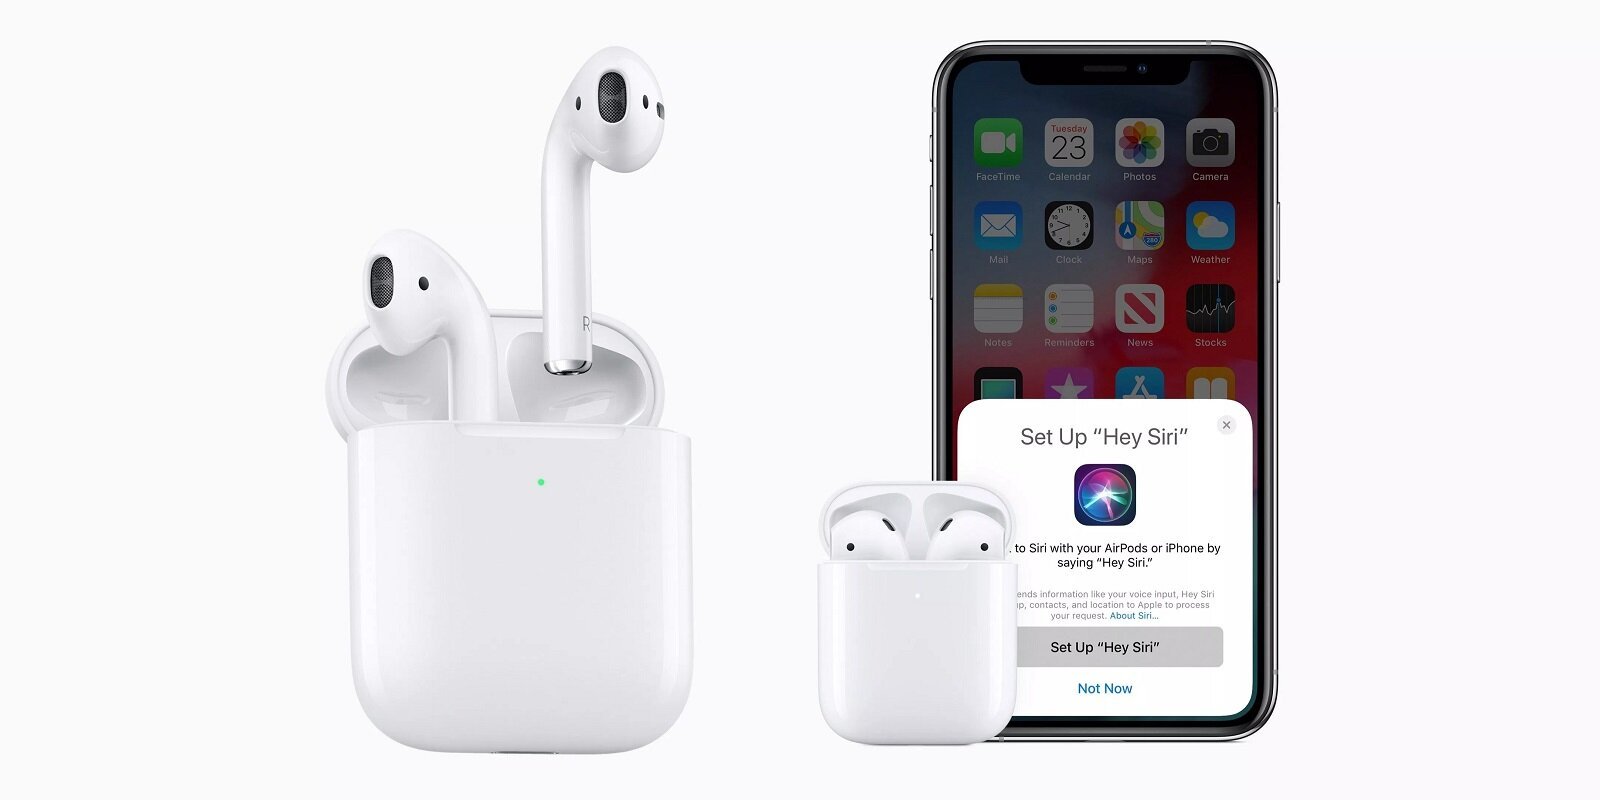 Νέα Apple AirPods με αυξημένη αυτονομία, «Hey Siri» και επιλογή για wireless charging case